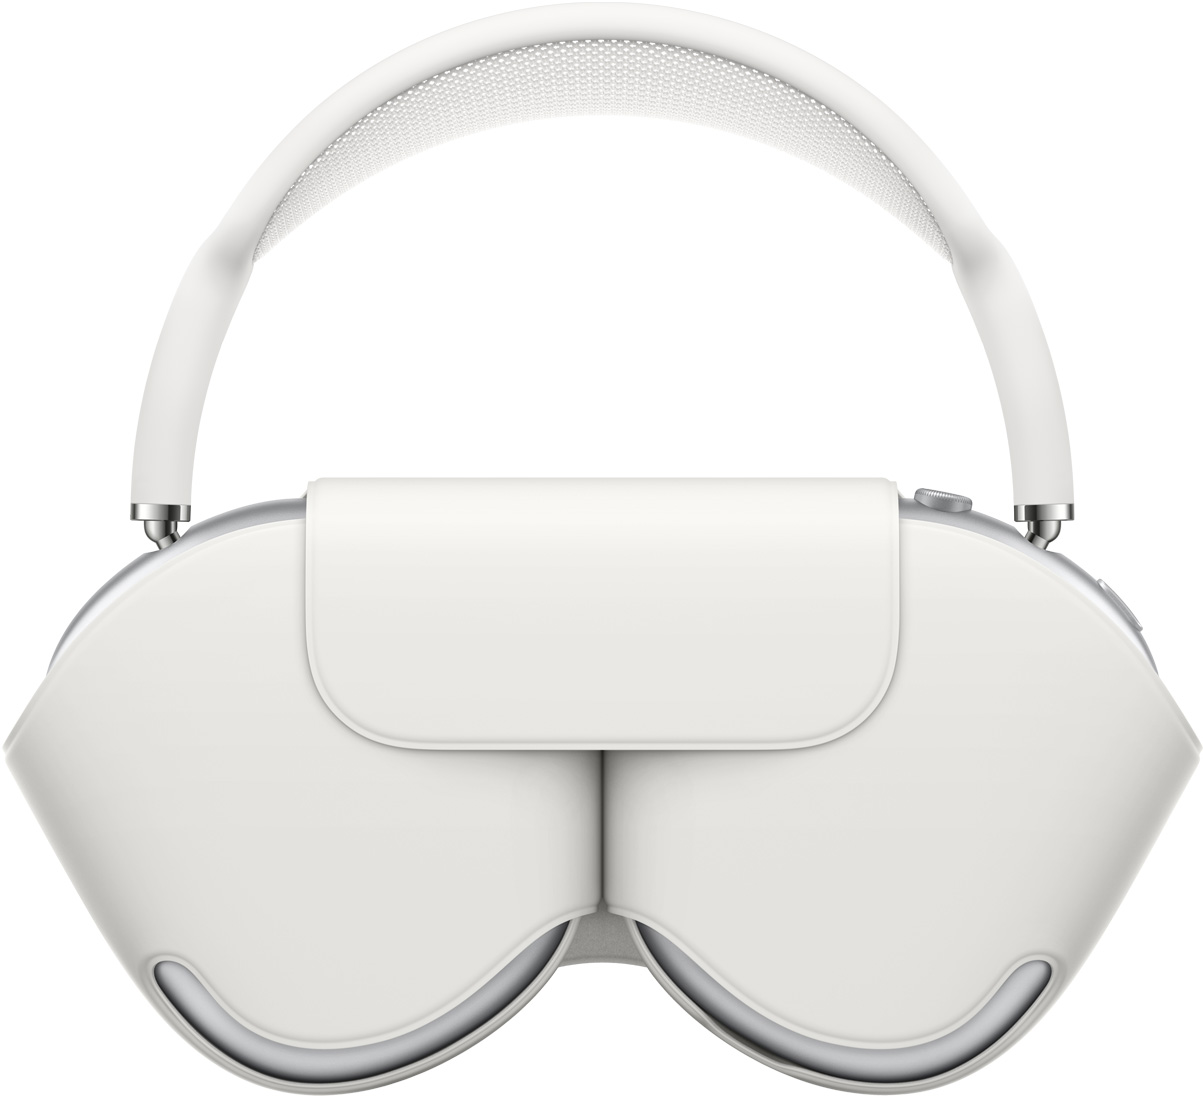 Imagen que muestra unos AirPods Max en color plata con la funda Smart Case blanca haciendo juego que protege los audífonos, la diadema se extiende por encima de la funda.